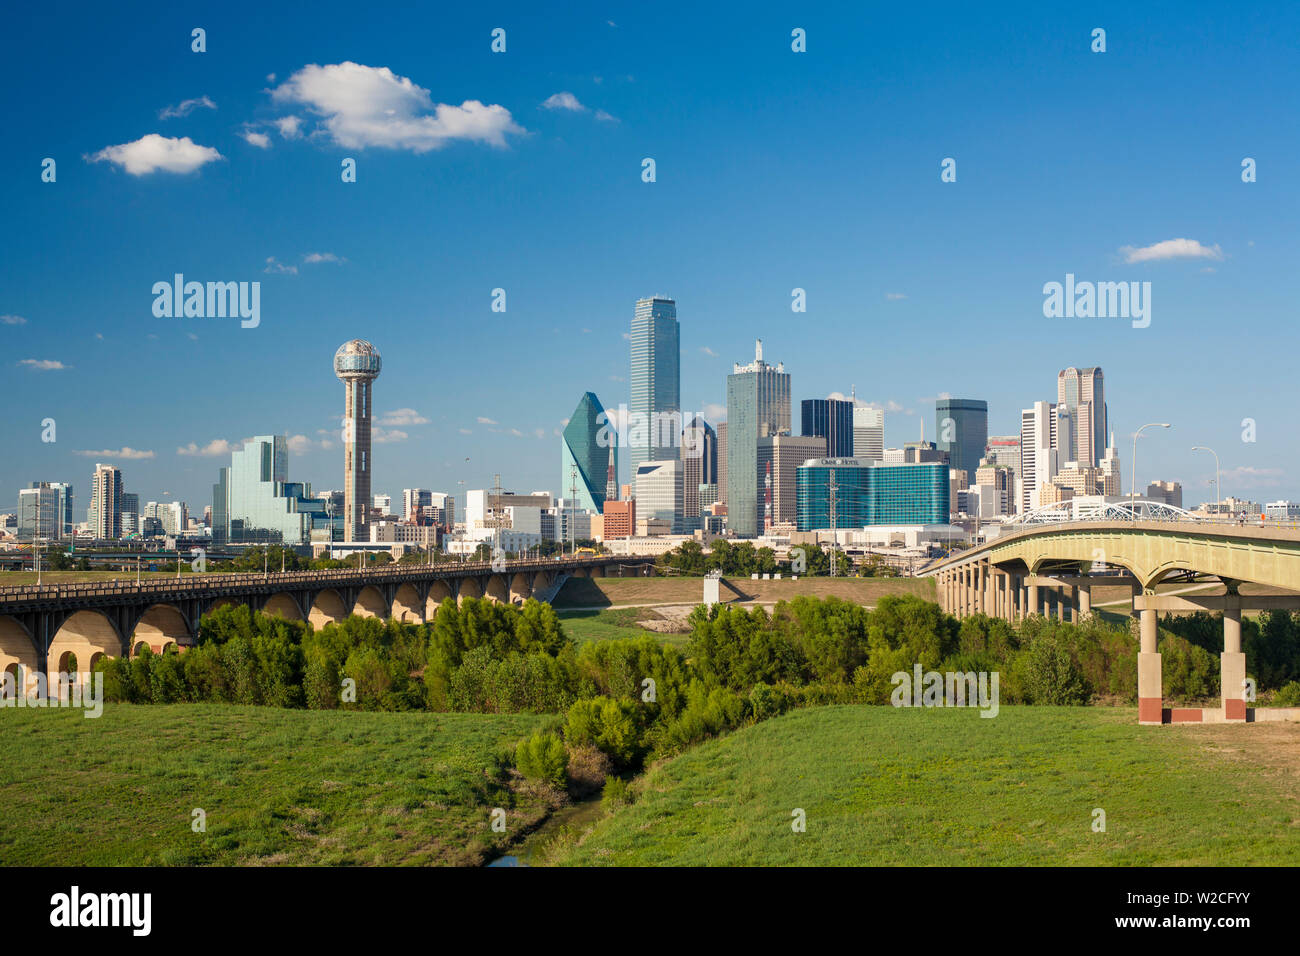 Puente de la autopista a través de la planicie aluvial del río de Dallas, y el horizonte de la zona centro de la ciudad, Dallas, Texas, EE.UU. Foto de stock